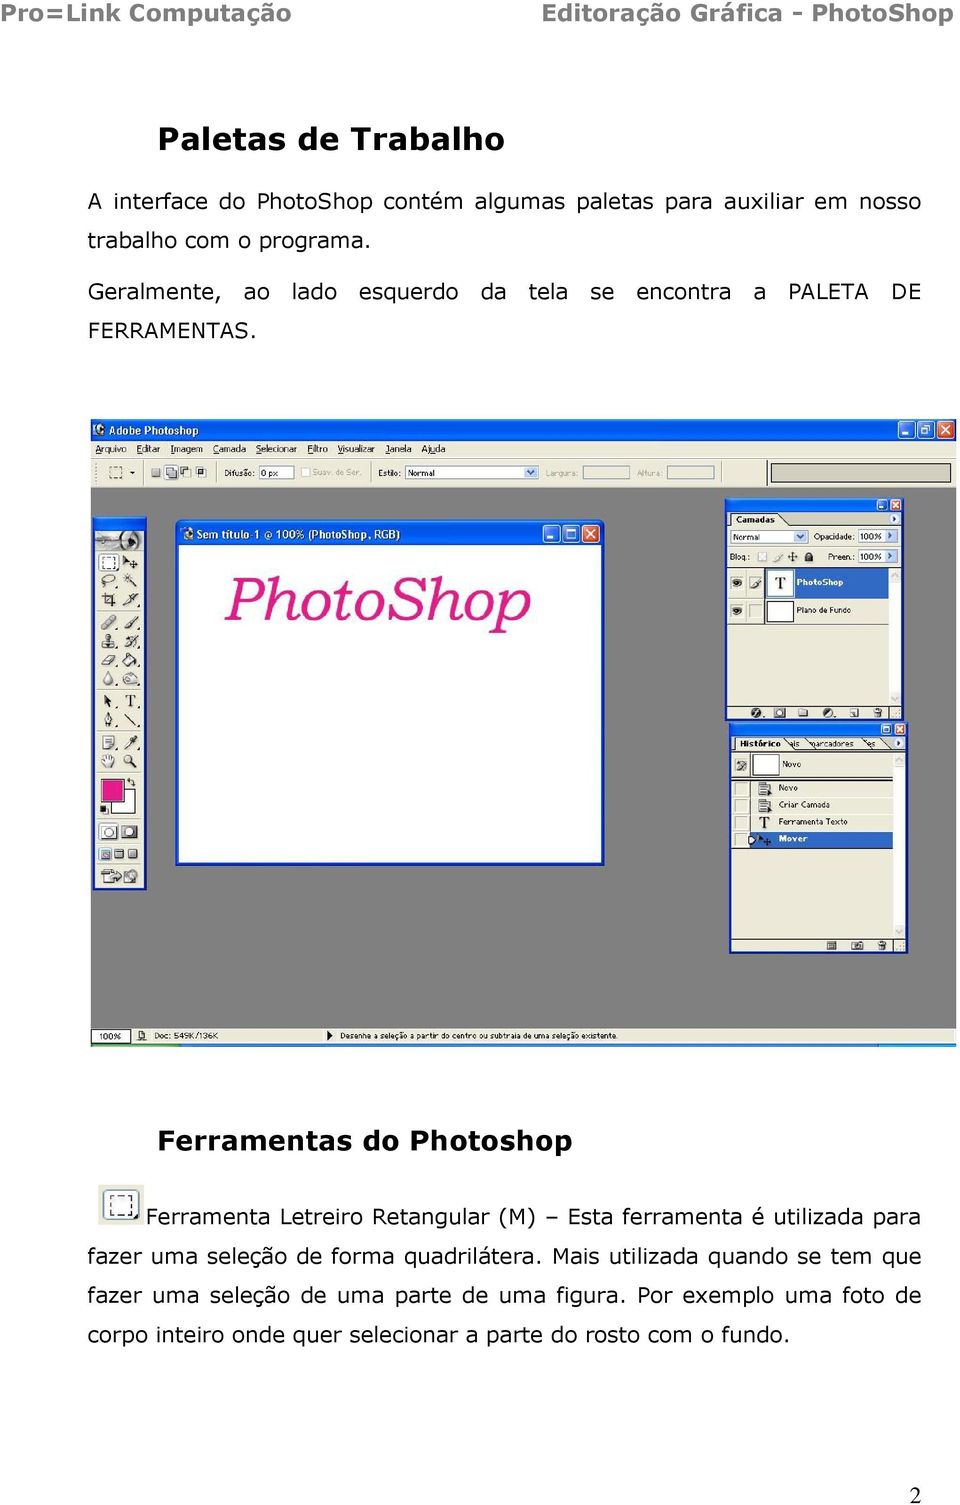 Ferramentas do Photoshop Ferramenta Letreiro Retangular (M) Esta ferramenta é utilizada para fazer uma seleção de forma